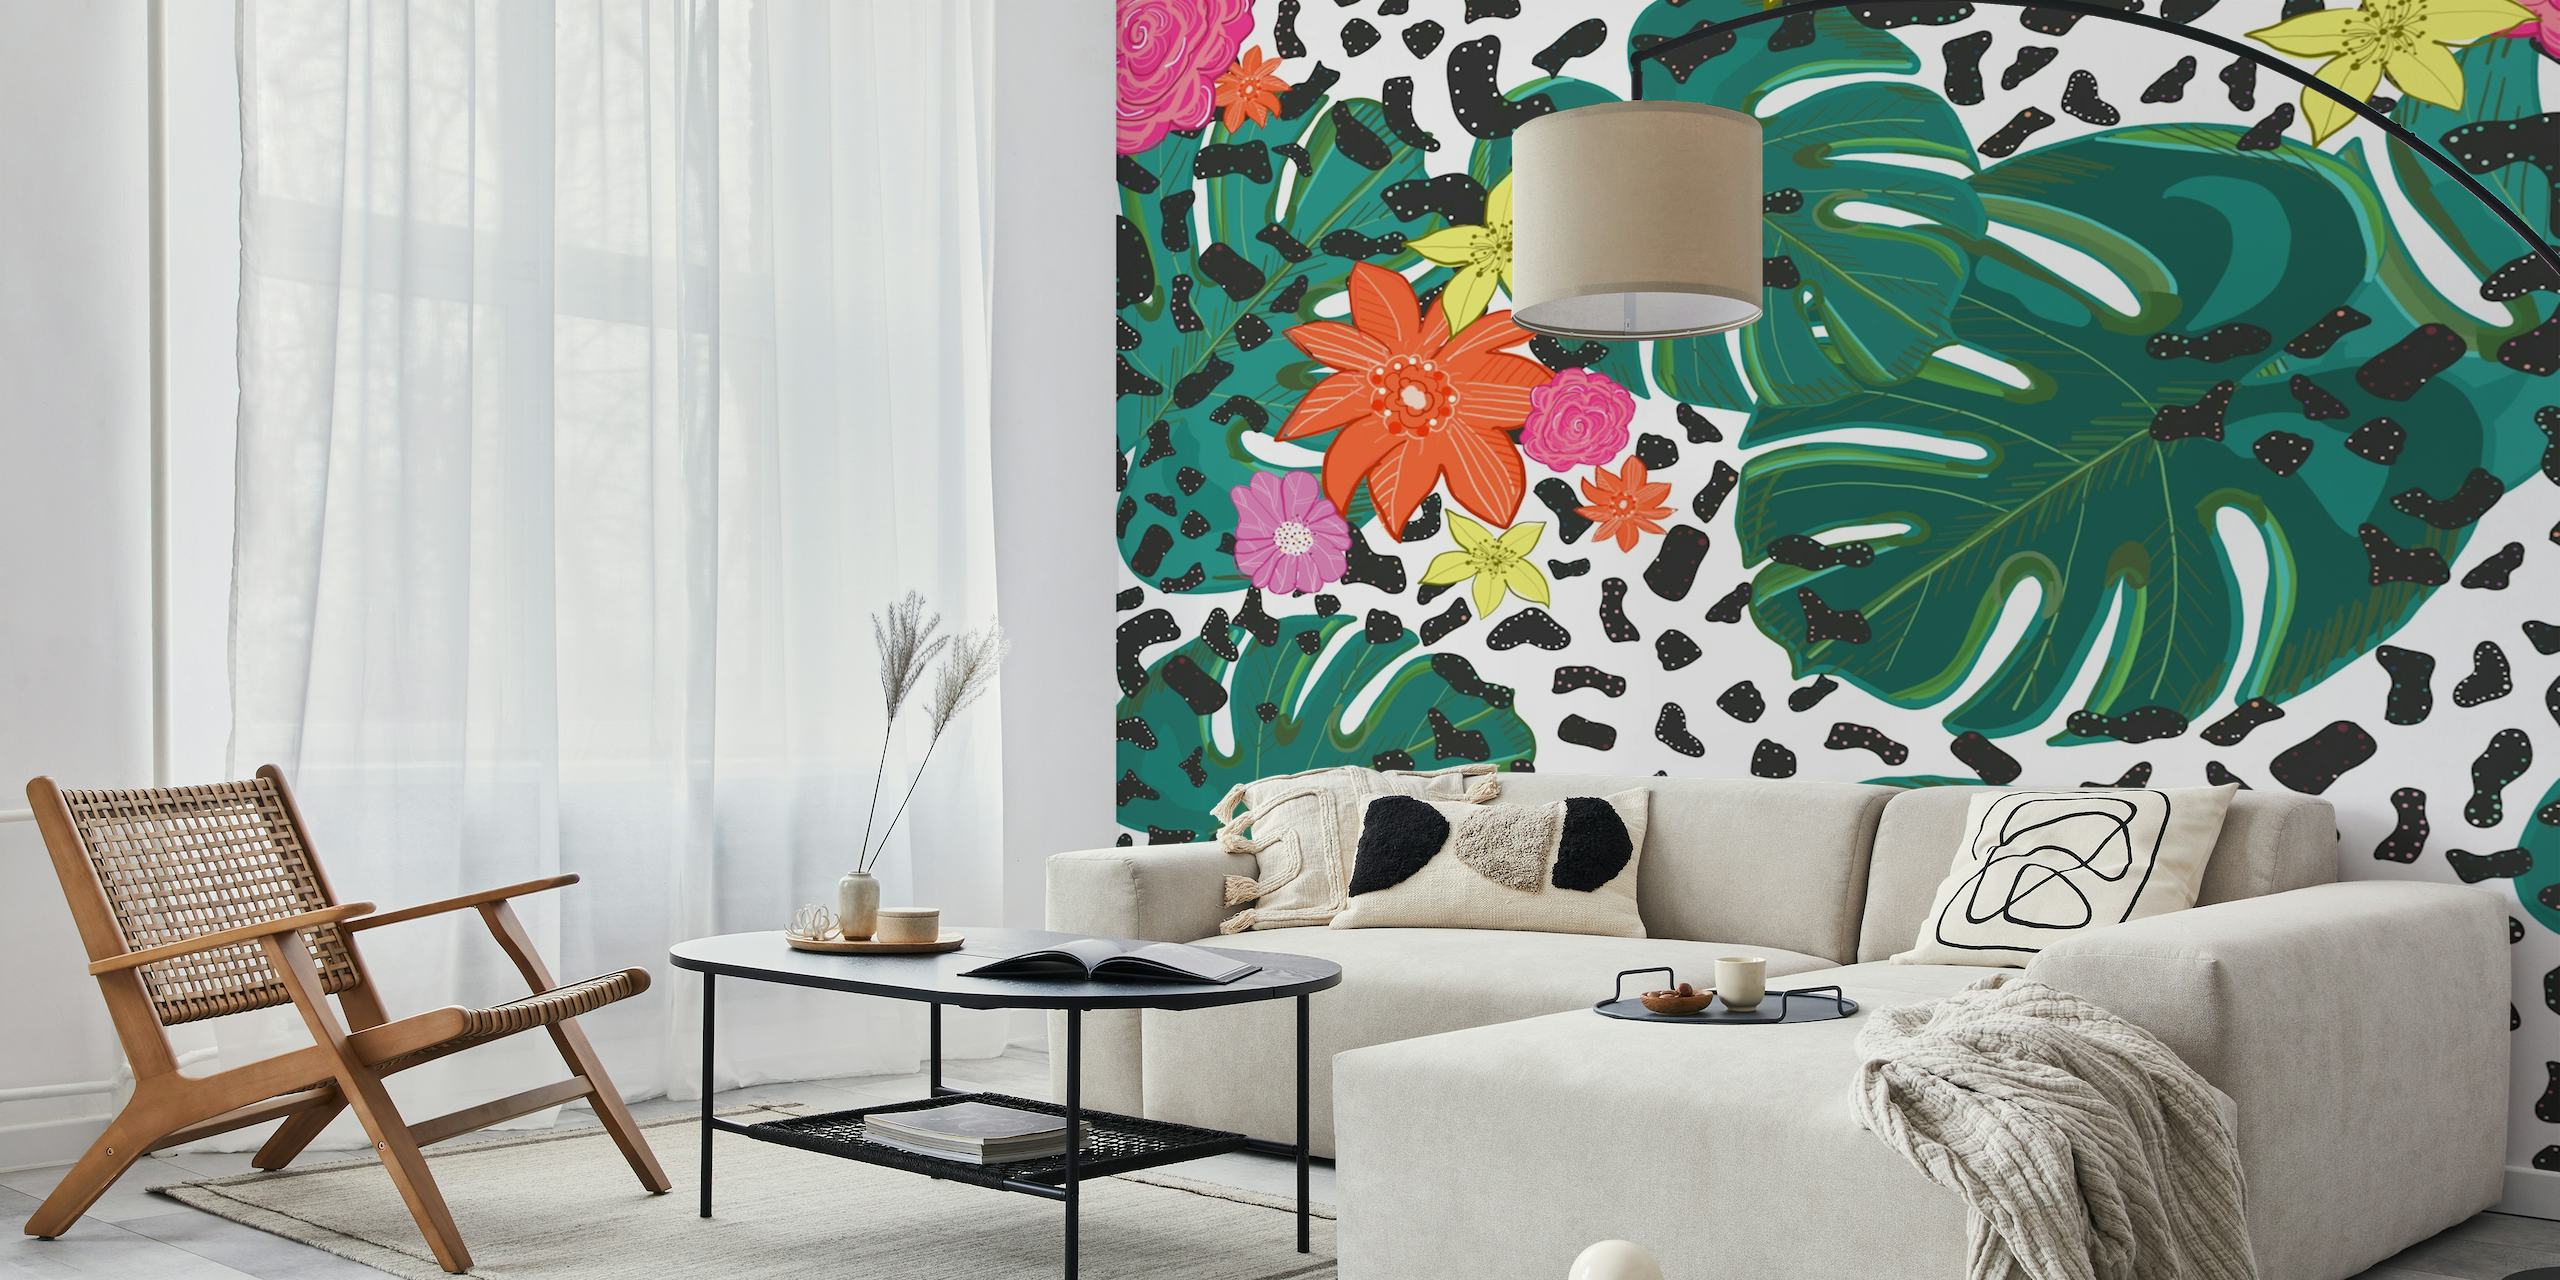 Värikäs trooppinen seinämaalaus monsteran lehdillä, kirkkailla kukilla ja leopardin täplillä